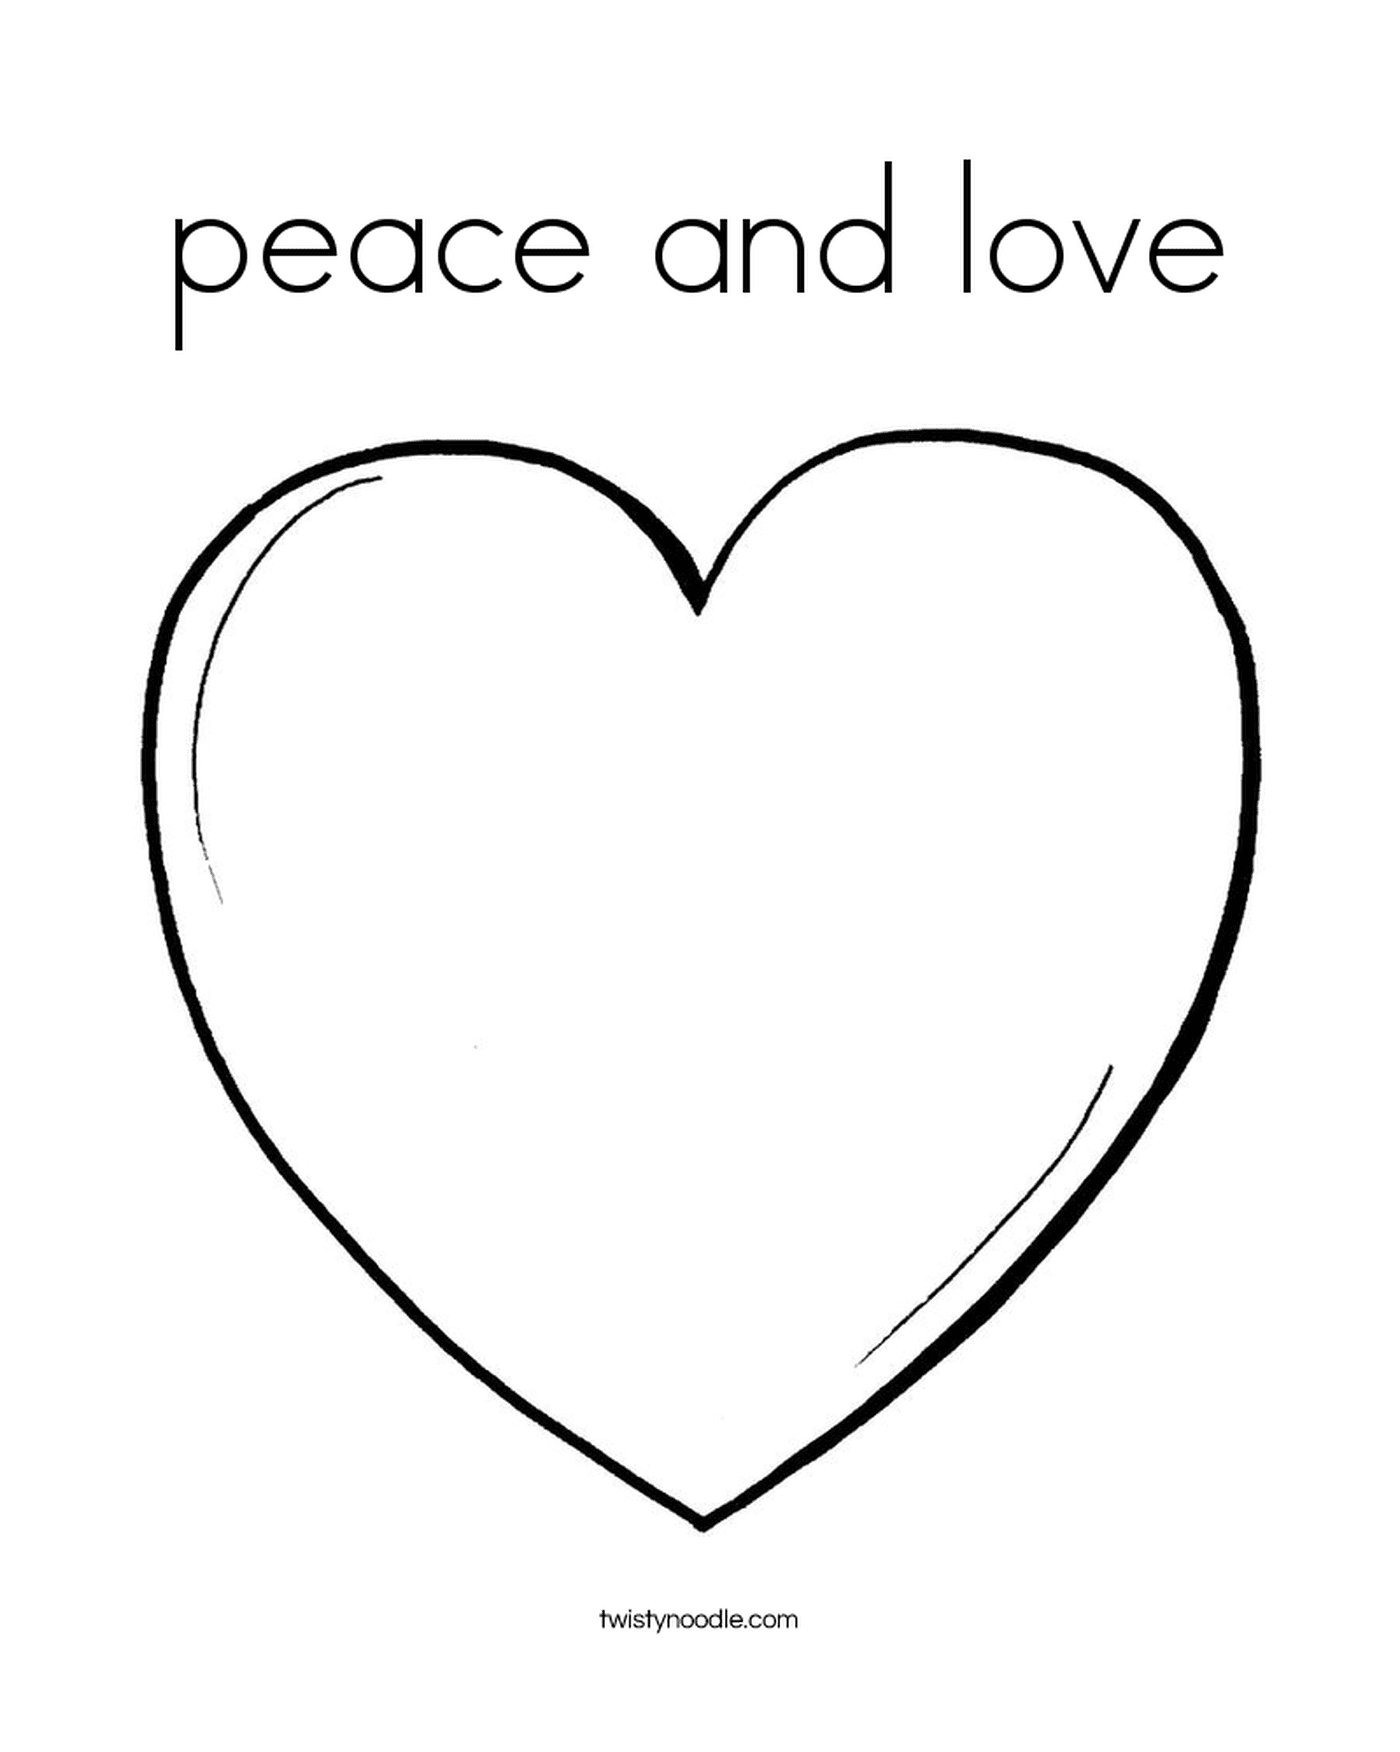   Un cœur de paix et d'amour 